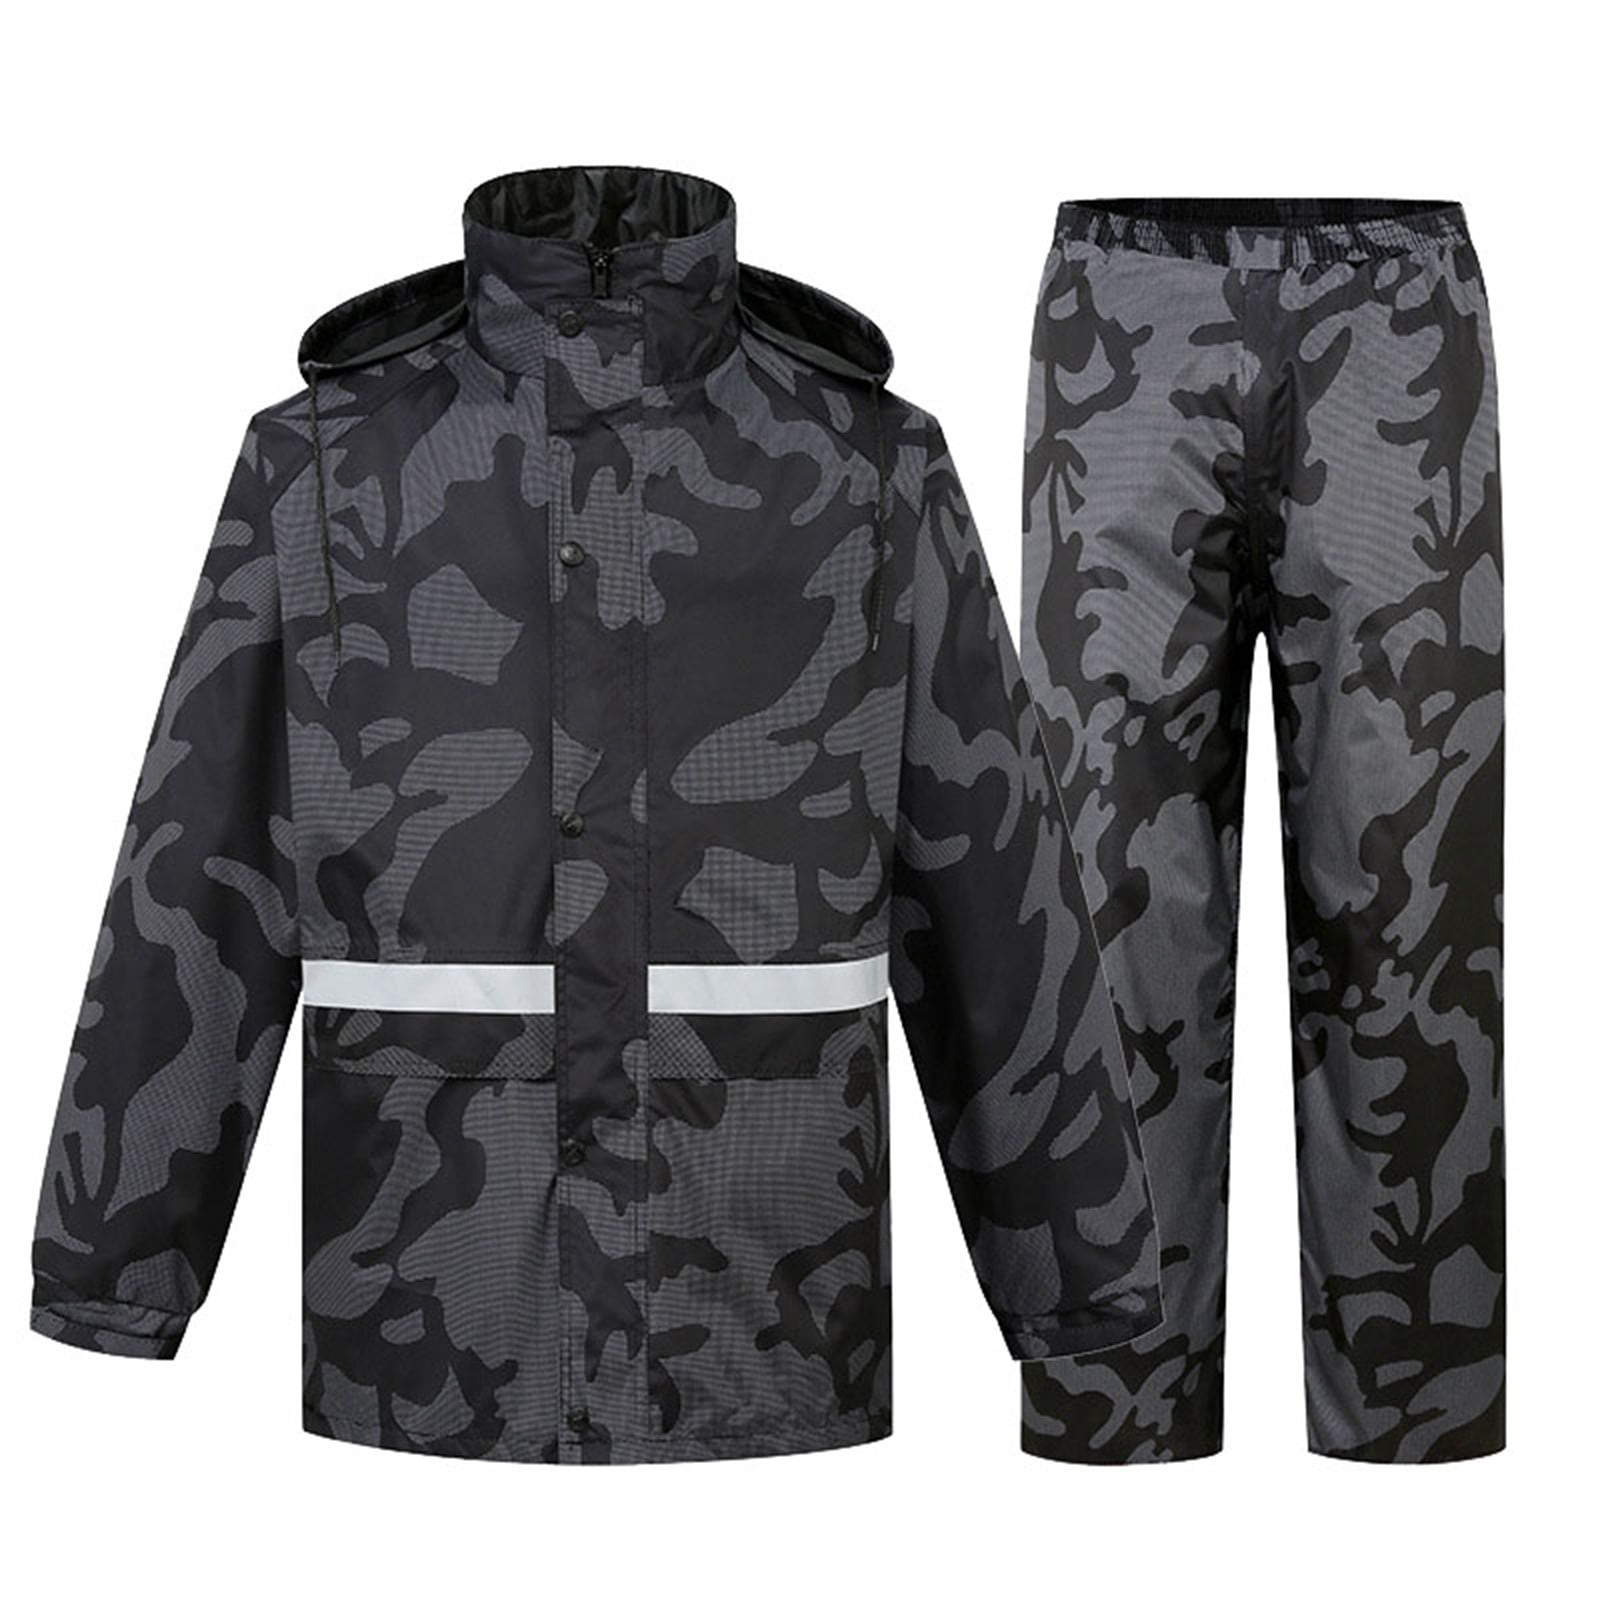 8QIDA Men's Suit Jackets 50R Men's Two Tier Rain Suits Rain Jacket with ...